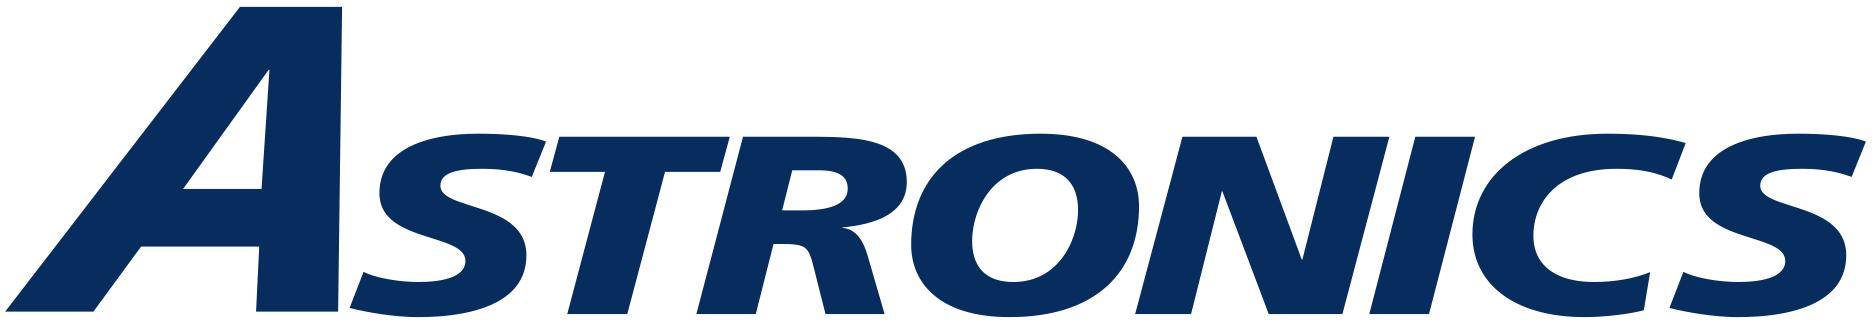 Astronics PECO logo